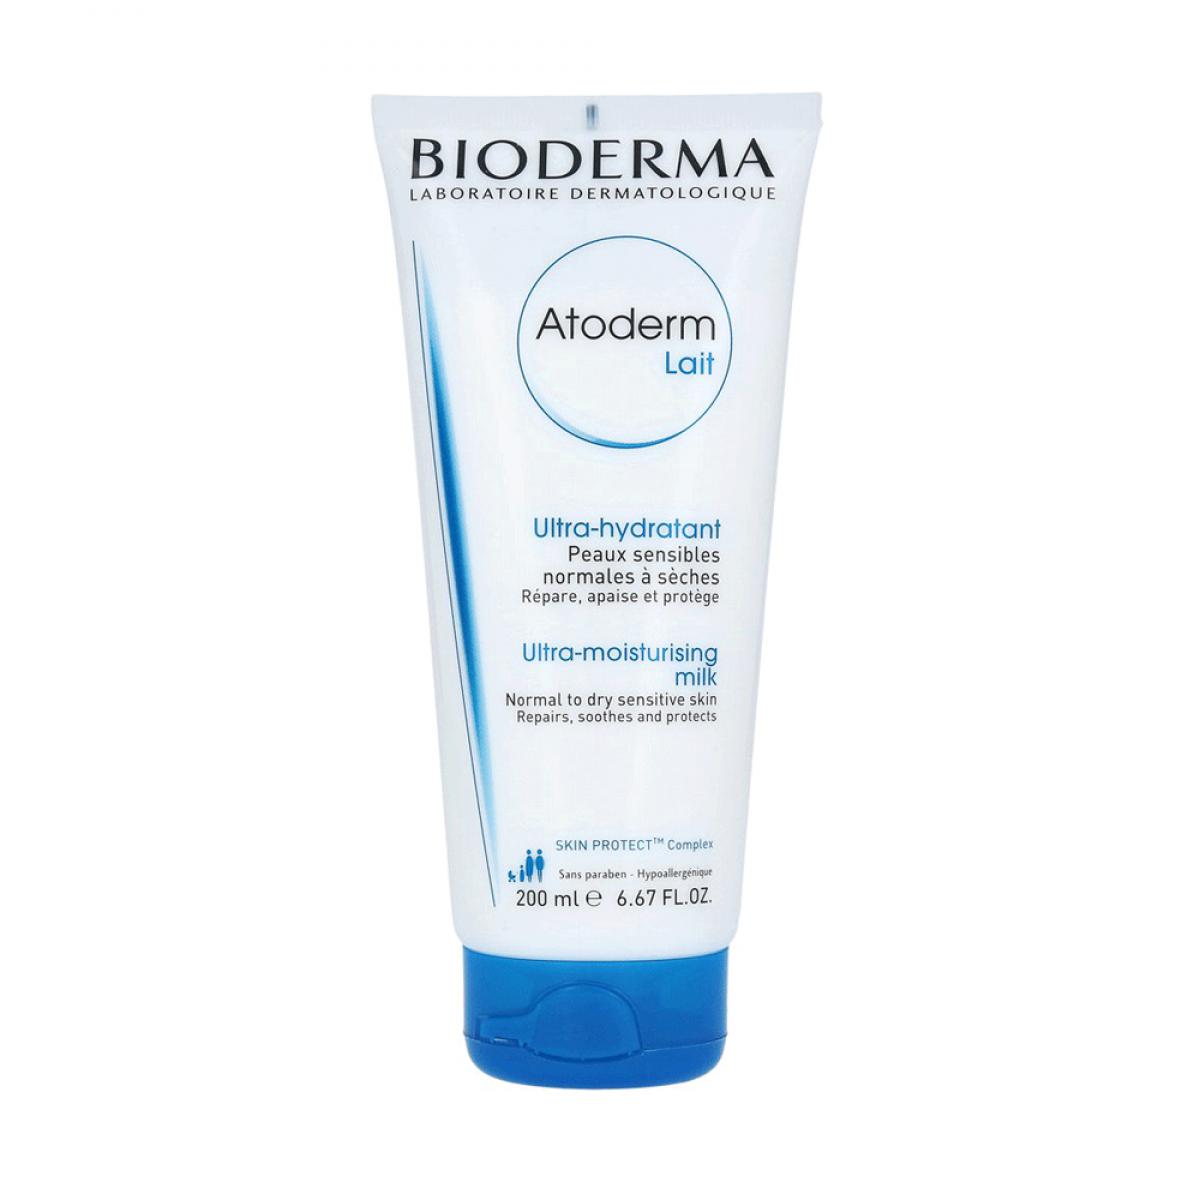 شیر مرطوب کننده صورت و بدن Atoderm Lait مناسب برای پوست نرمال تا خشک - Bioderma Atoderm Lait Moisturizing Face & Body Milk For Normal And Dry Skins 200ml